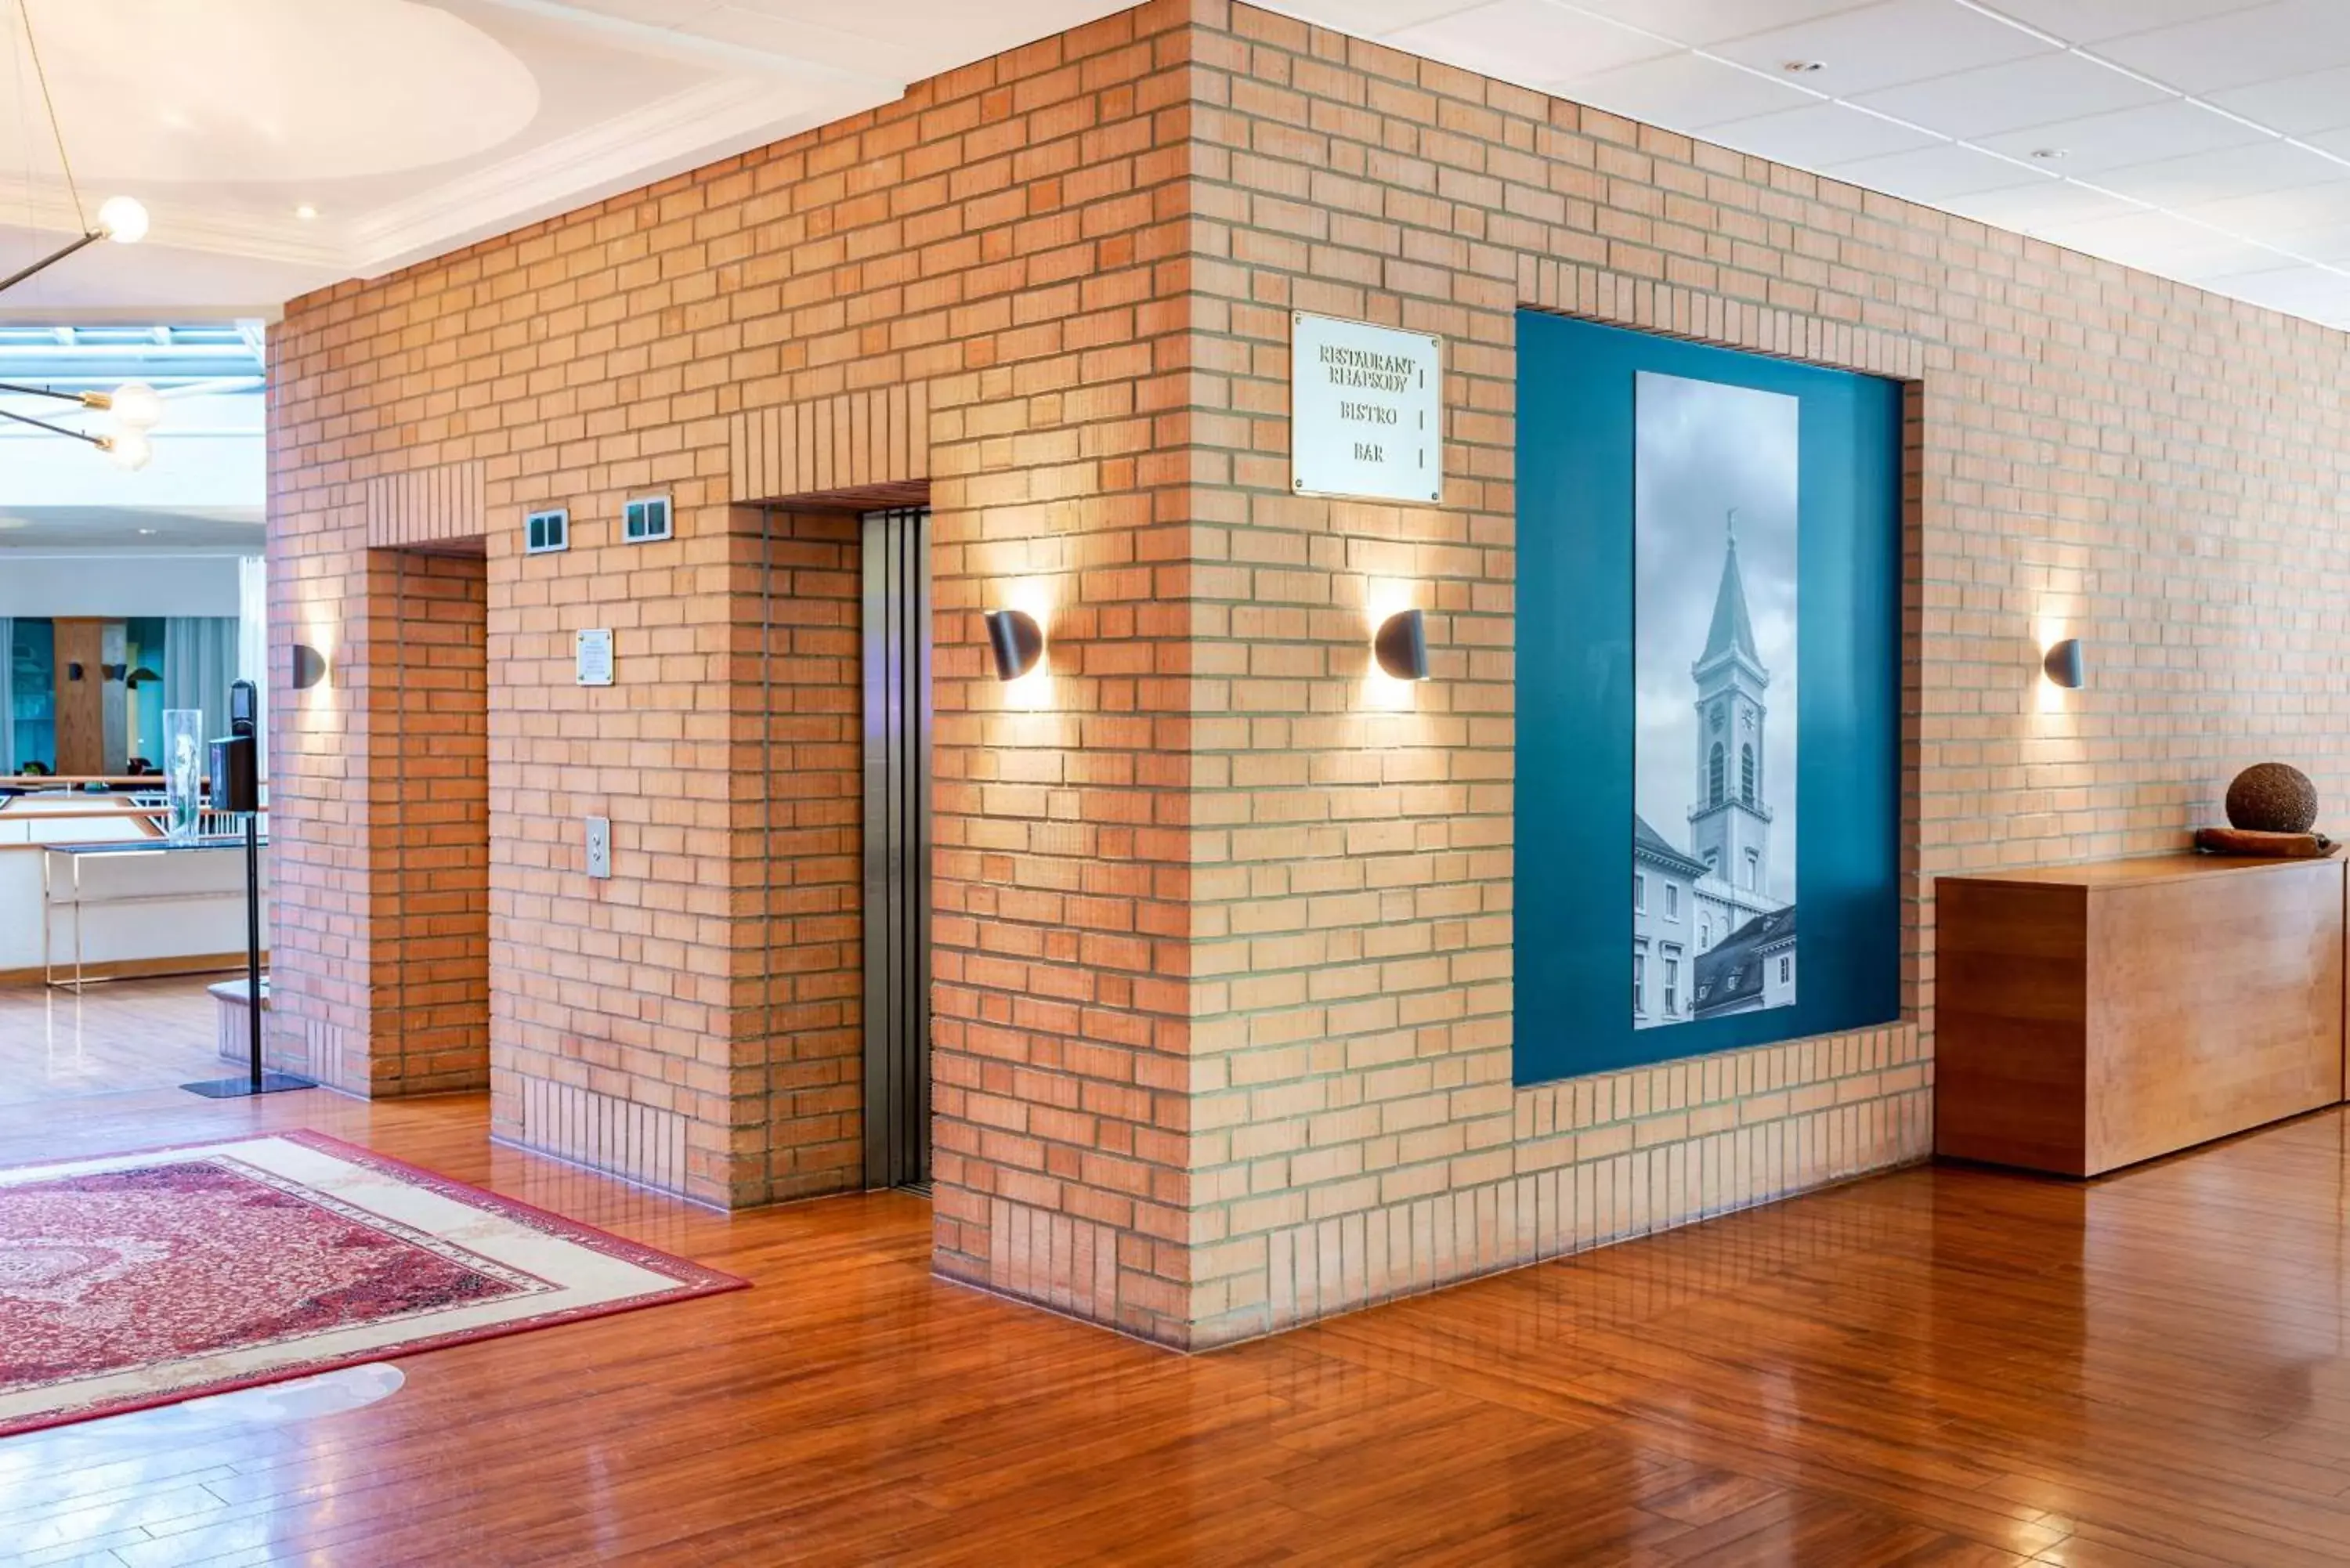 Lobby or reception in Radisson Blu Hotel Karlsruhe